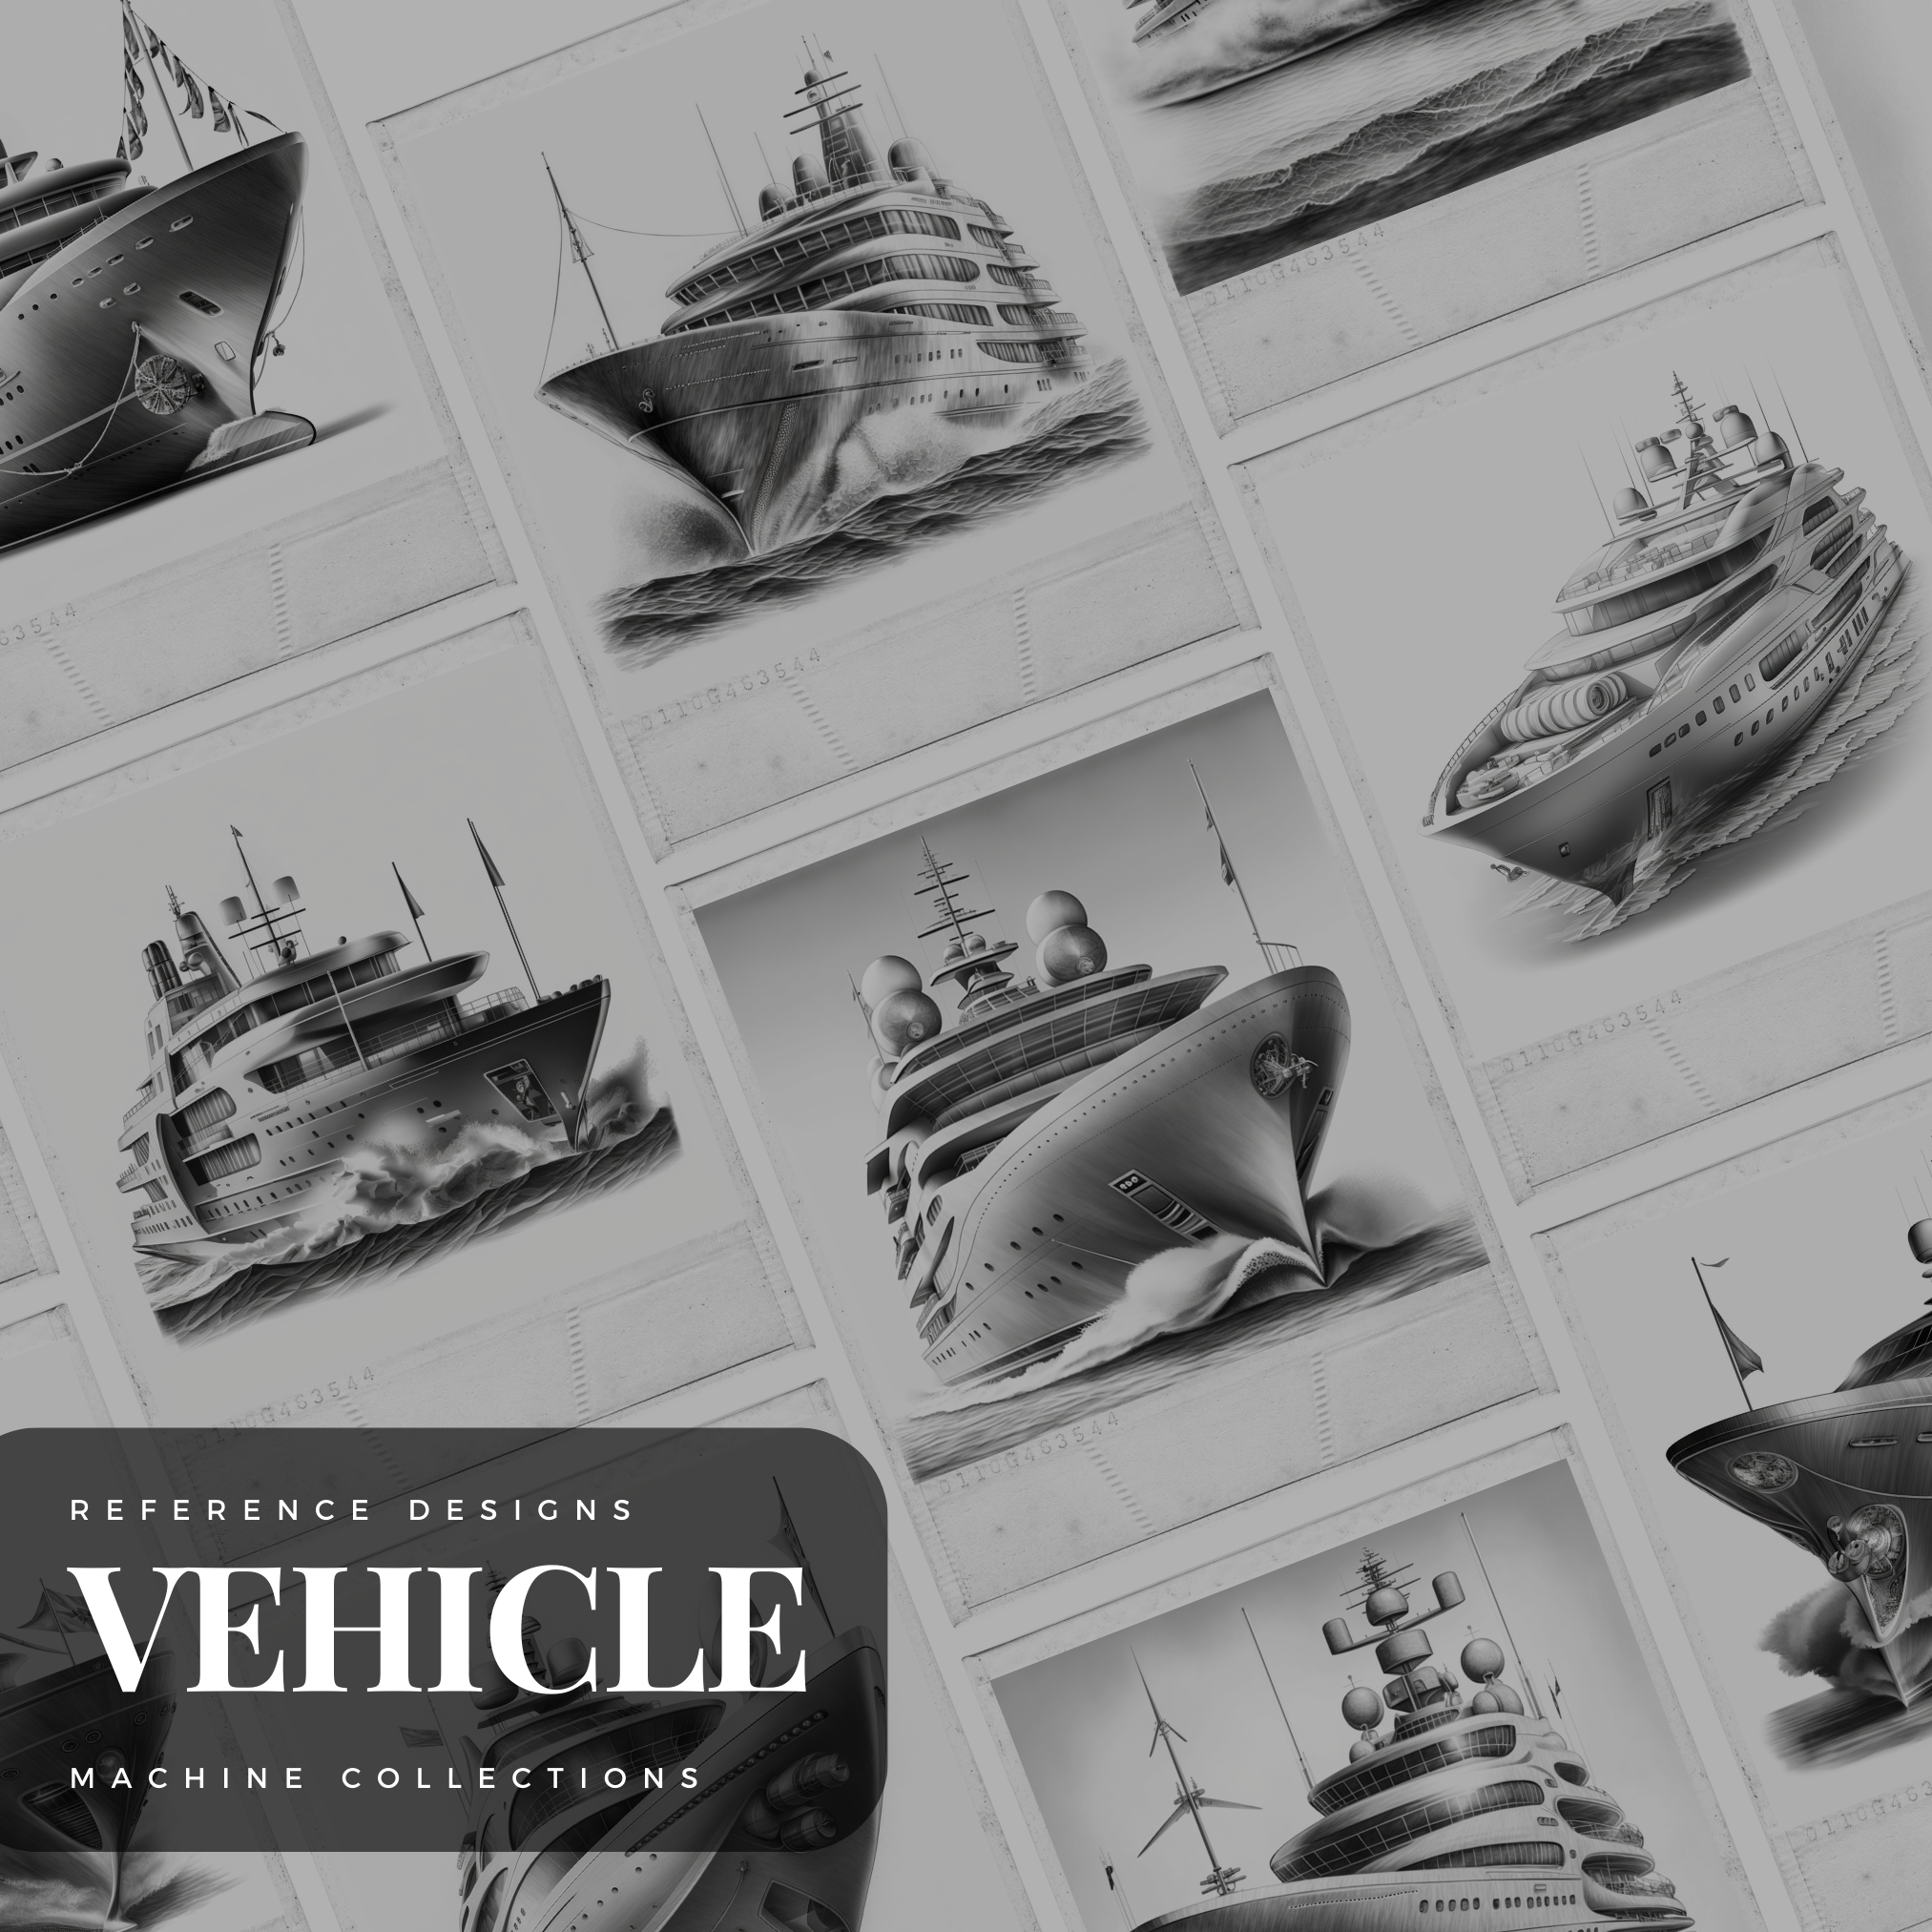 Yachts Digital Design Collection: 50 Procreate & Sketchbook Images